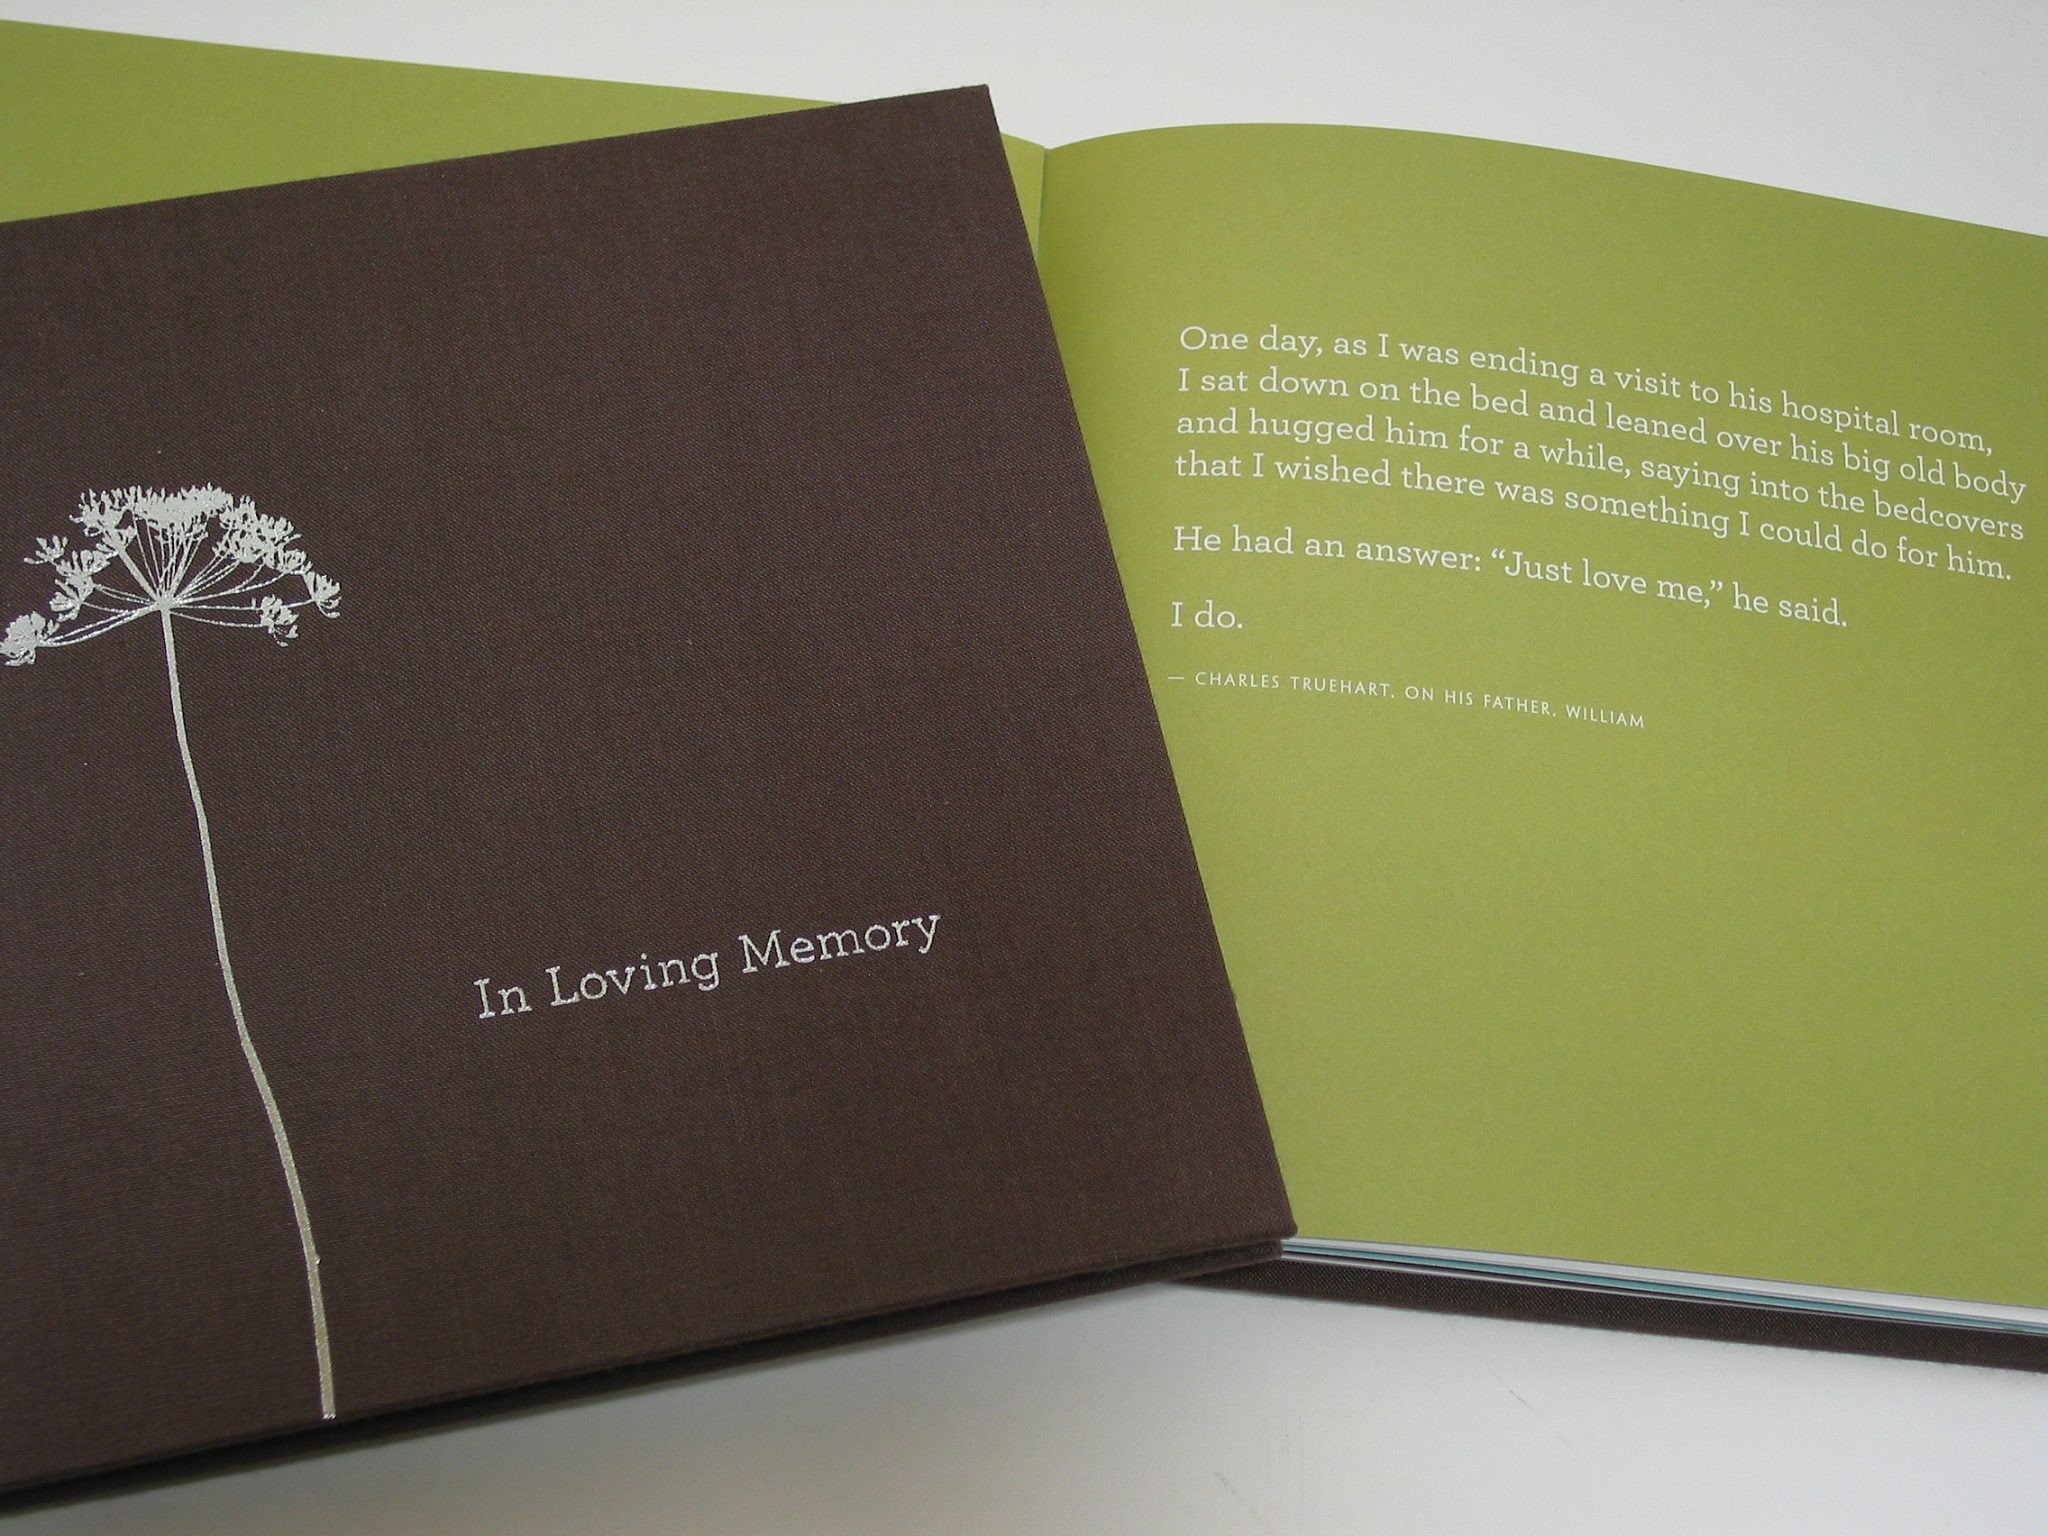 2048x1536 bumble B design - Condolence Box: "In Loving Memory" - Compendium Inc.